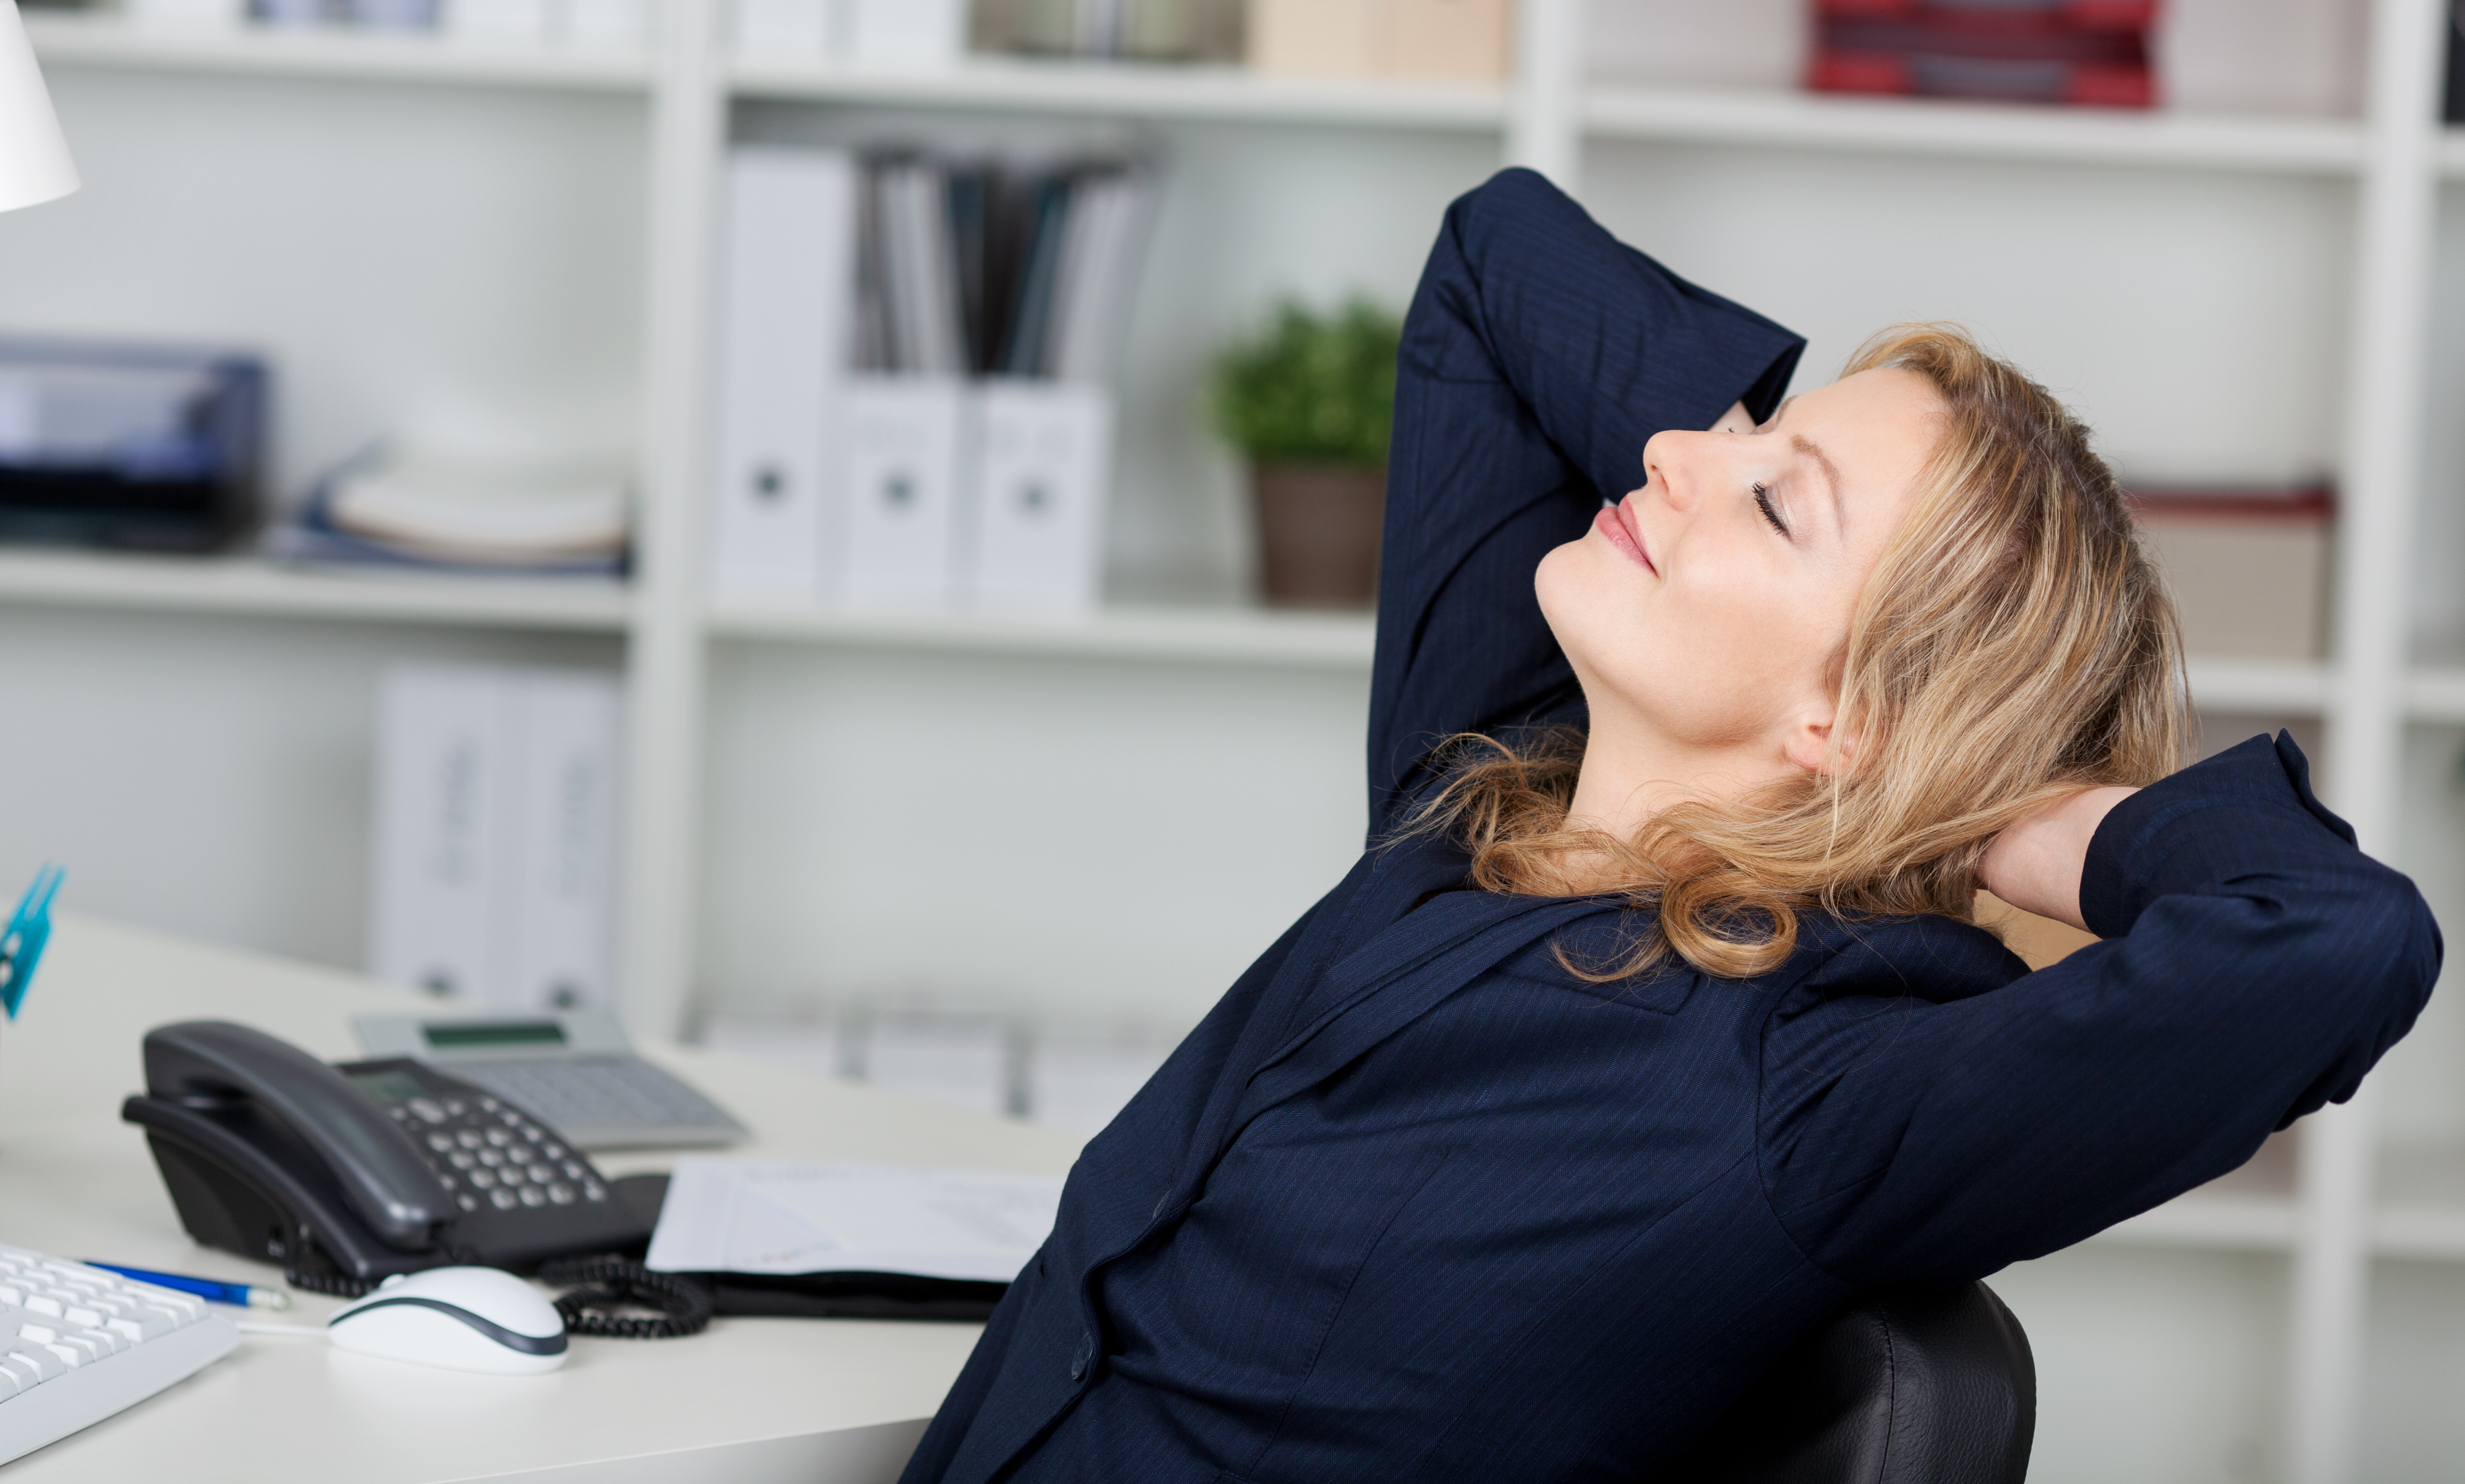 Frau die entspannt auf einem Bürosessel sitzt und die Arme hinter dem Kopf verschränkt hält